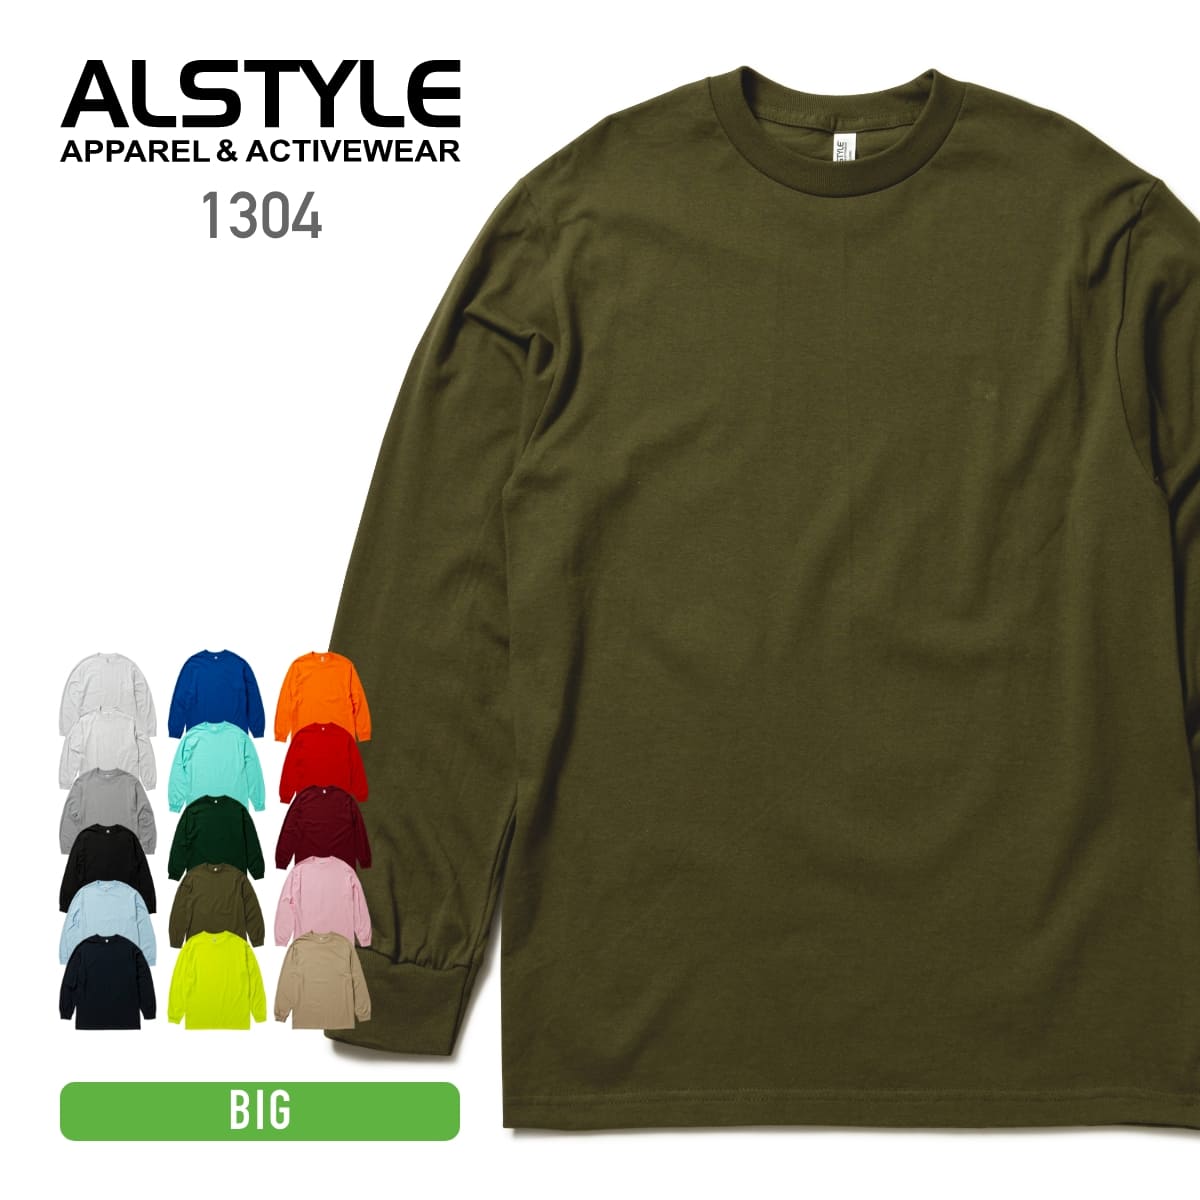 ALSTYLE(アルスタイル) – Tshirt.stビジネス